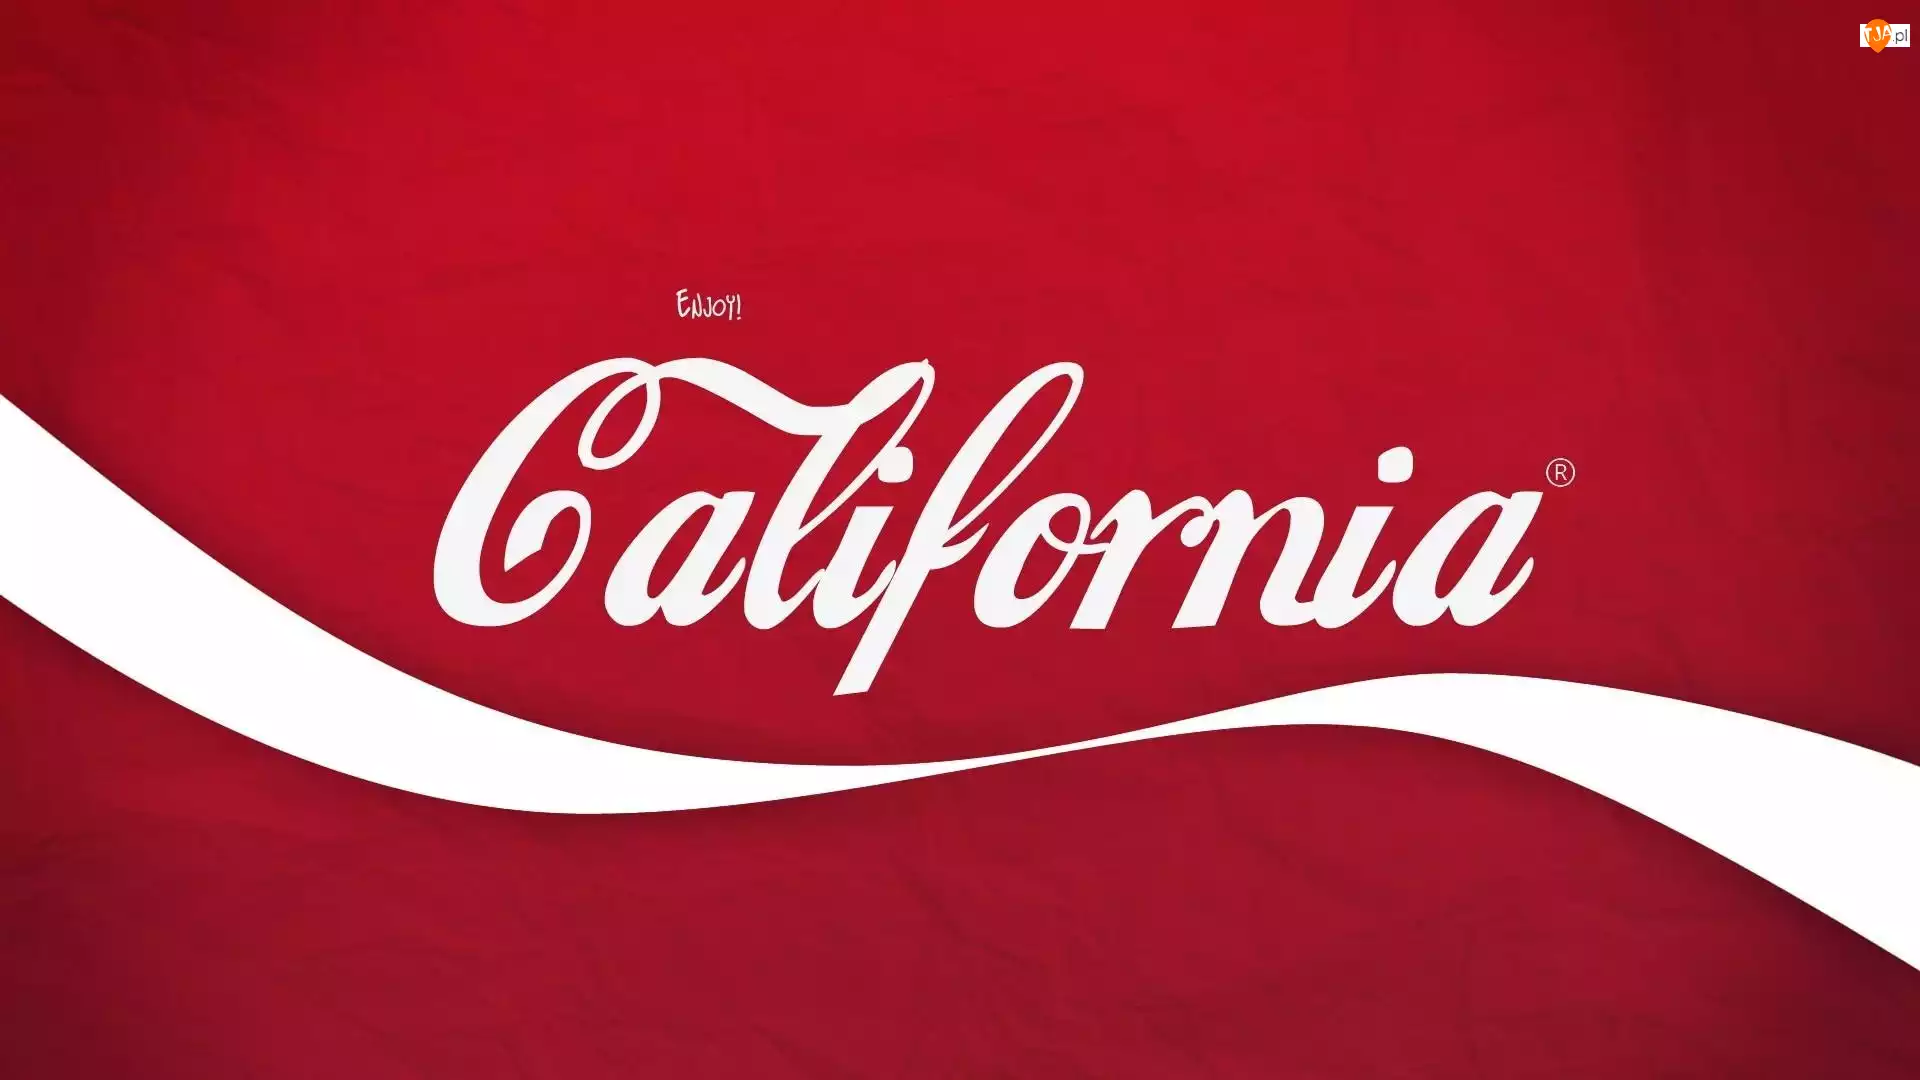 Coca-Cola, California